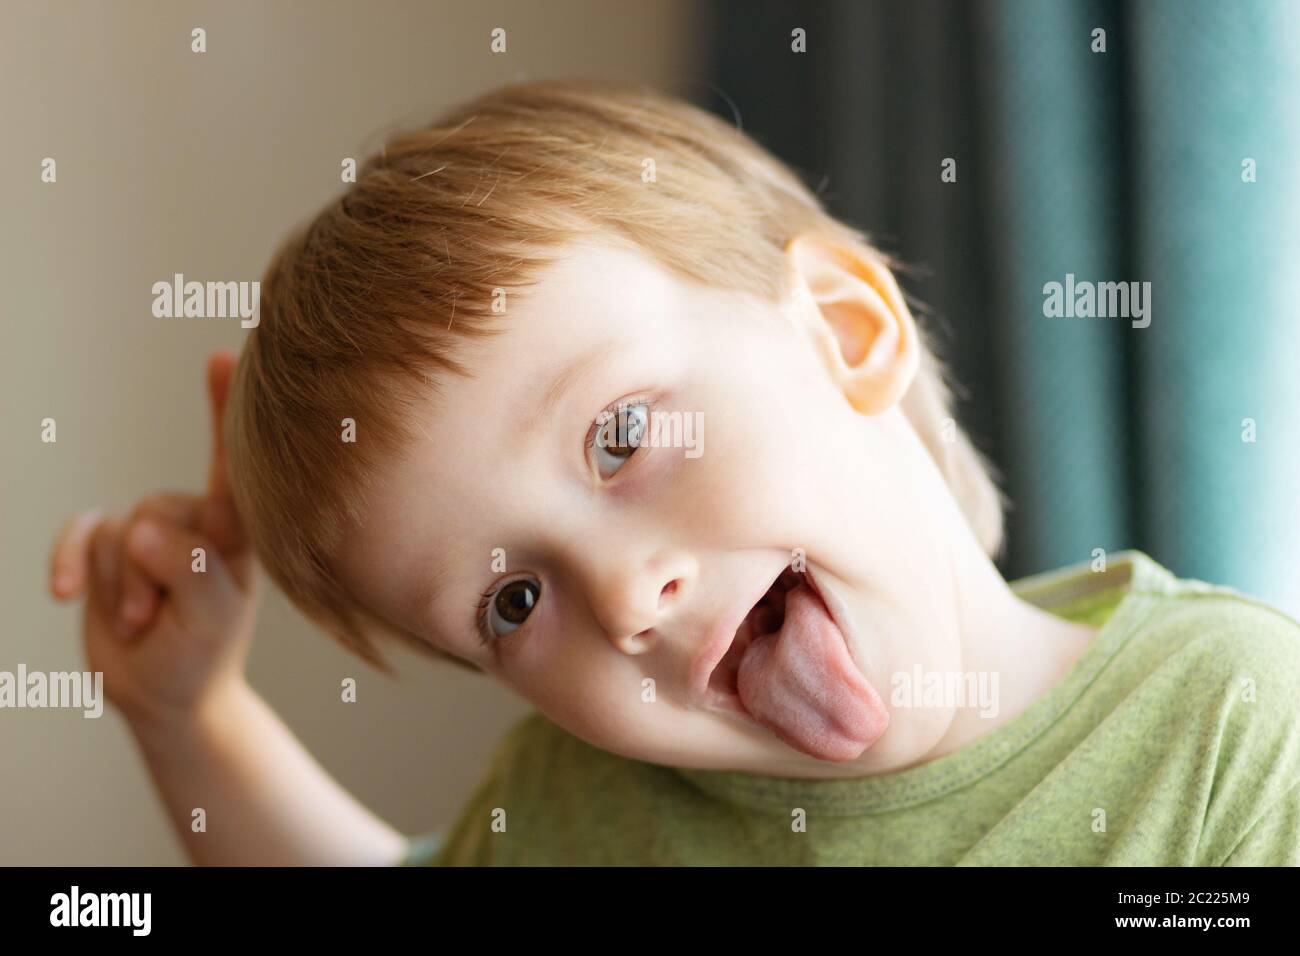 Bel ragazzo che mostra la lingua. Il bambino mette fuori la lingua - primo piano. Foto Stock